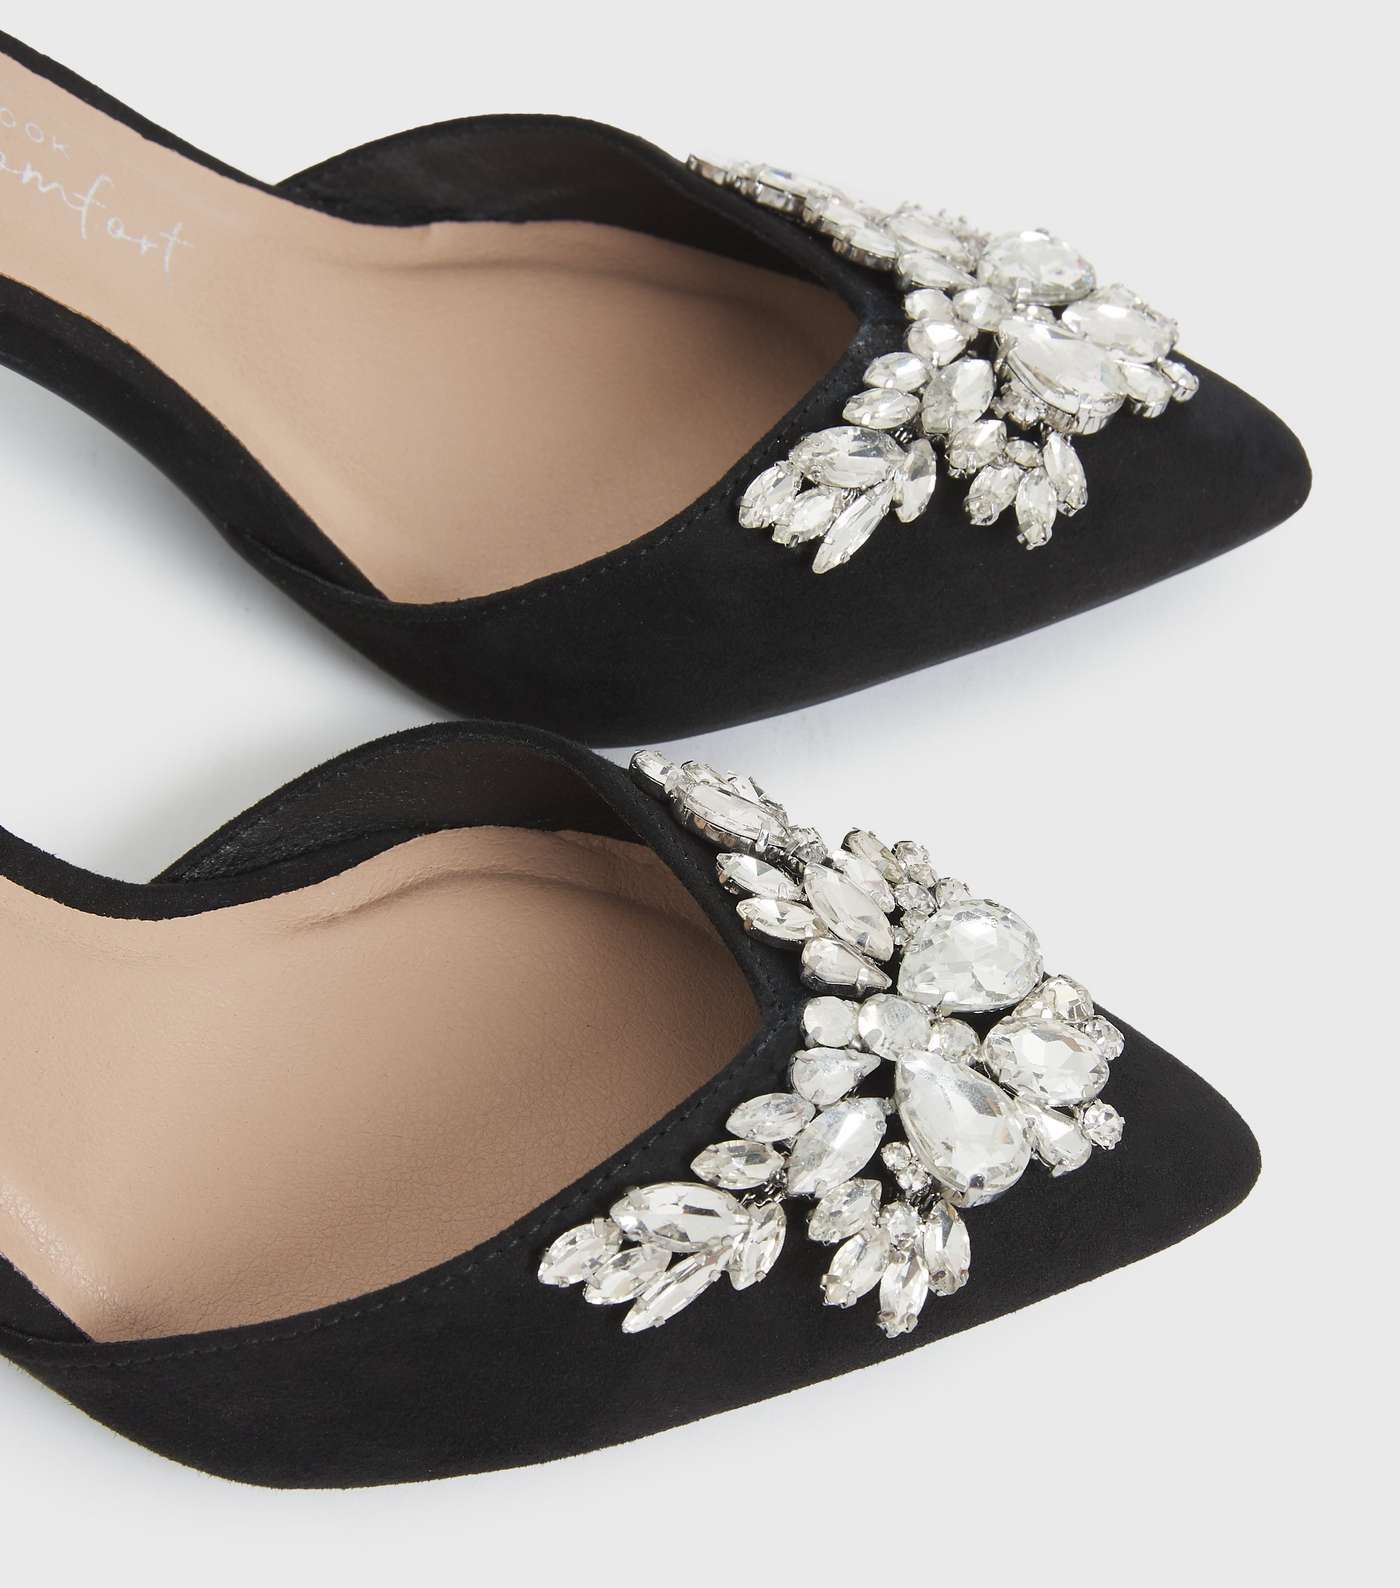 Wide Fit Black Embellished Stiletto Heel Court Shoes Image 3